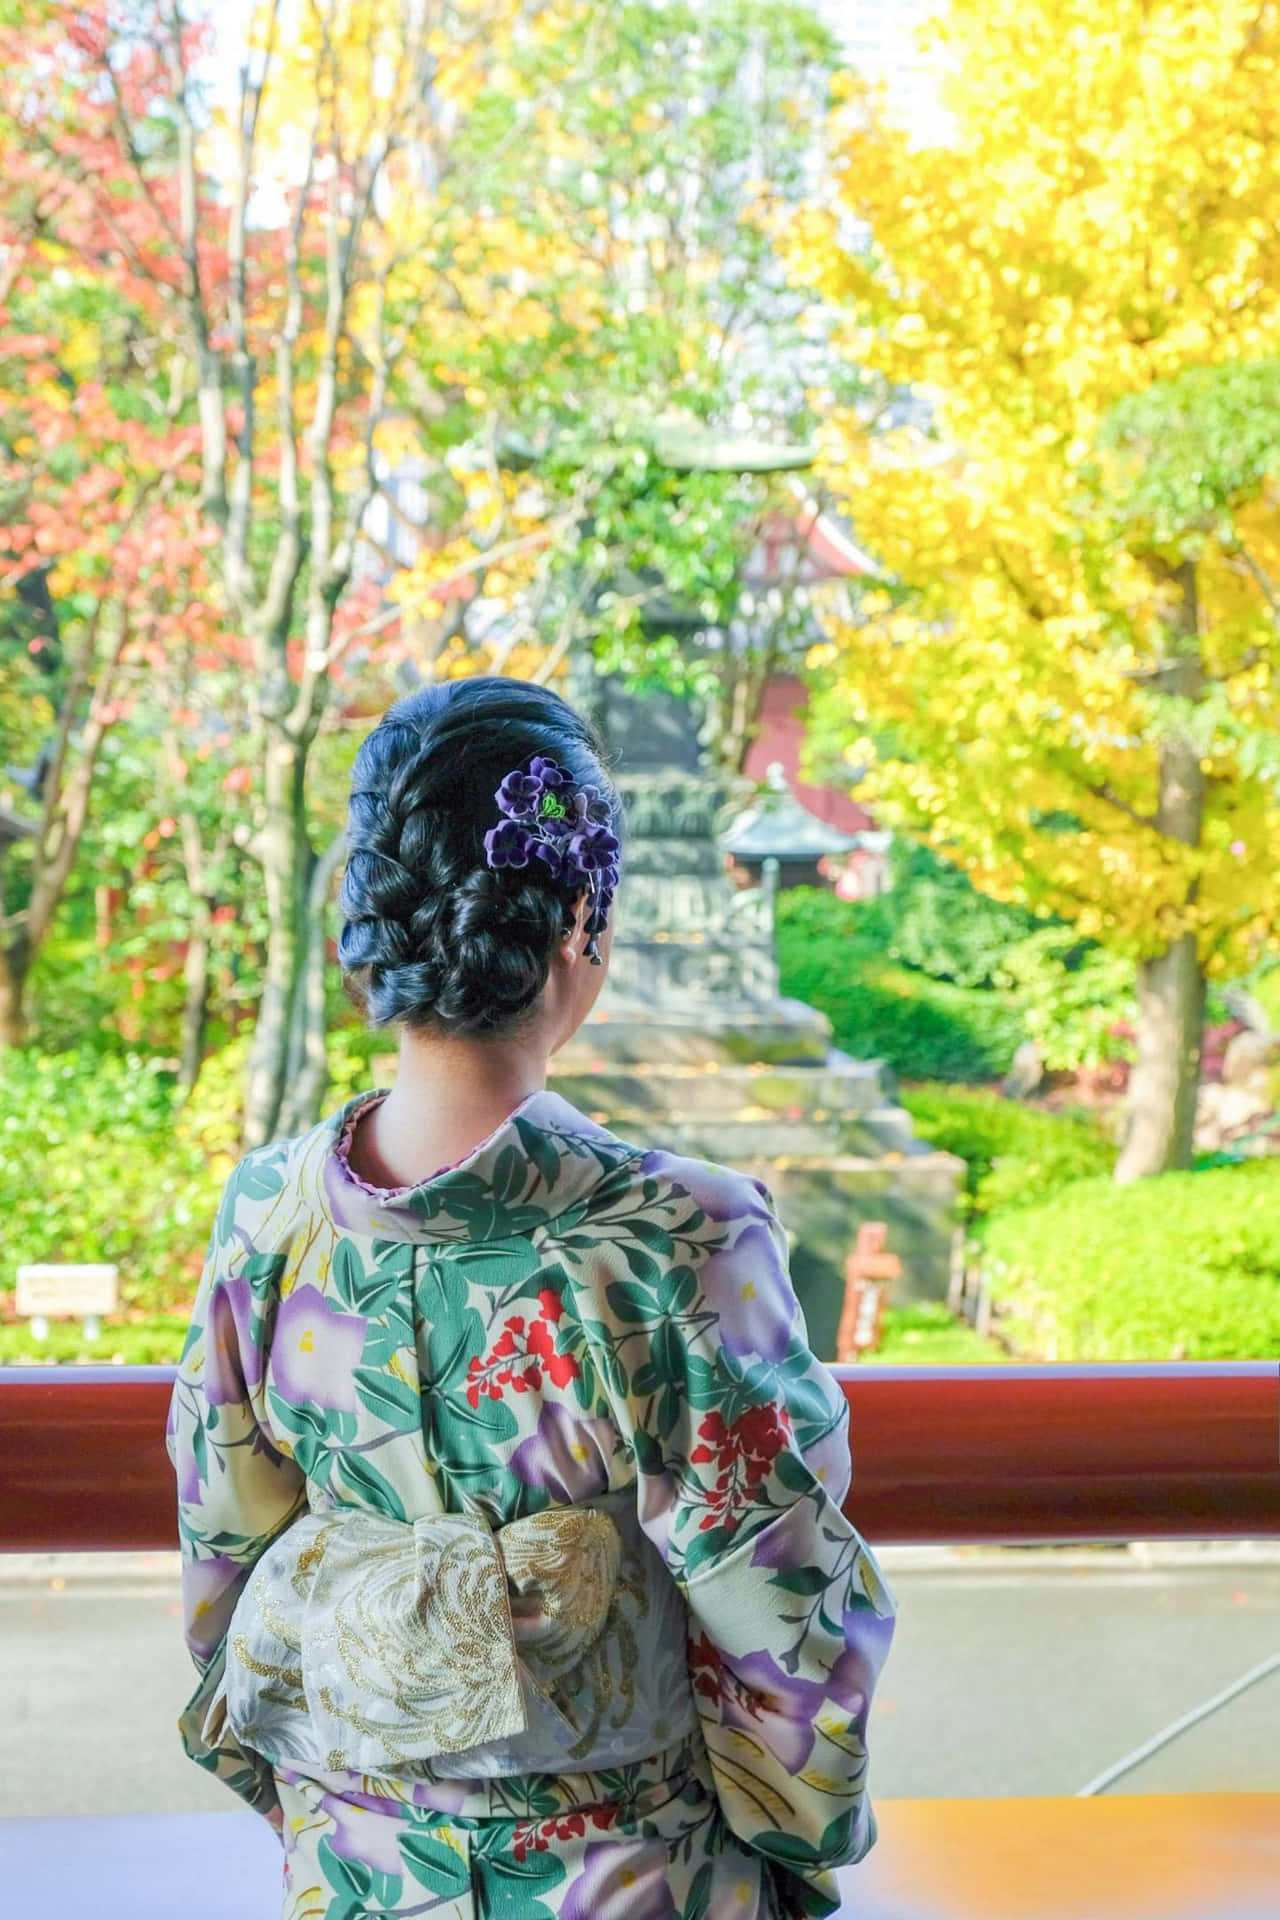 “A Vibrant Kimono Layout”